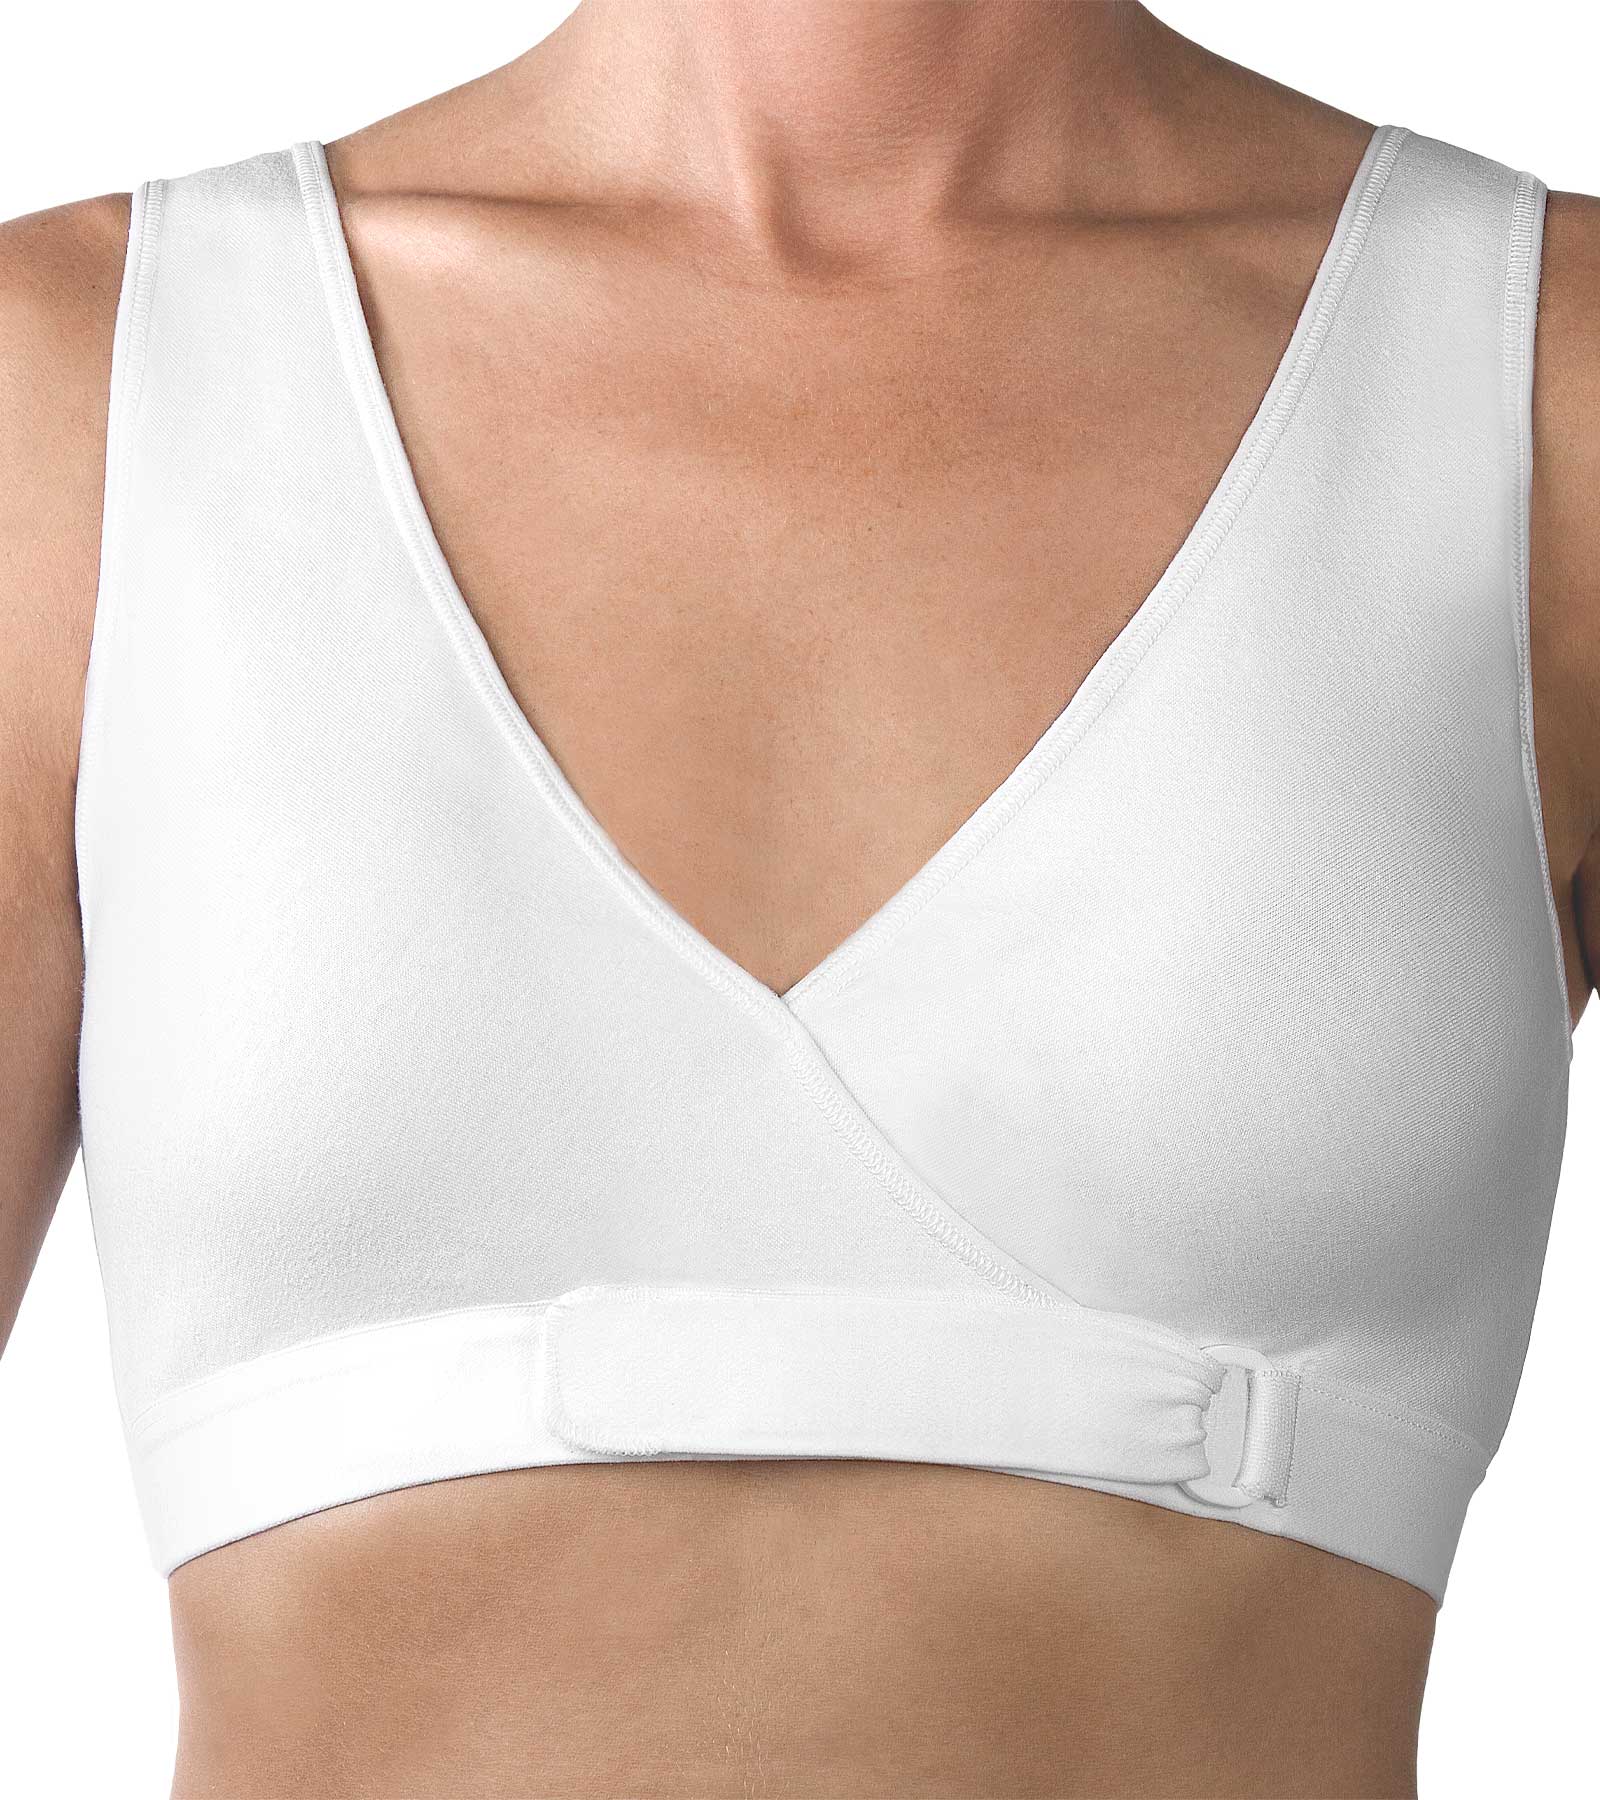 Cotton Ease front-closure bra